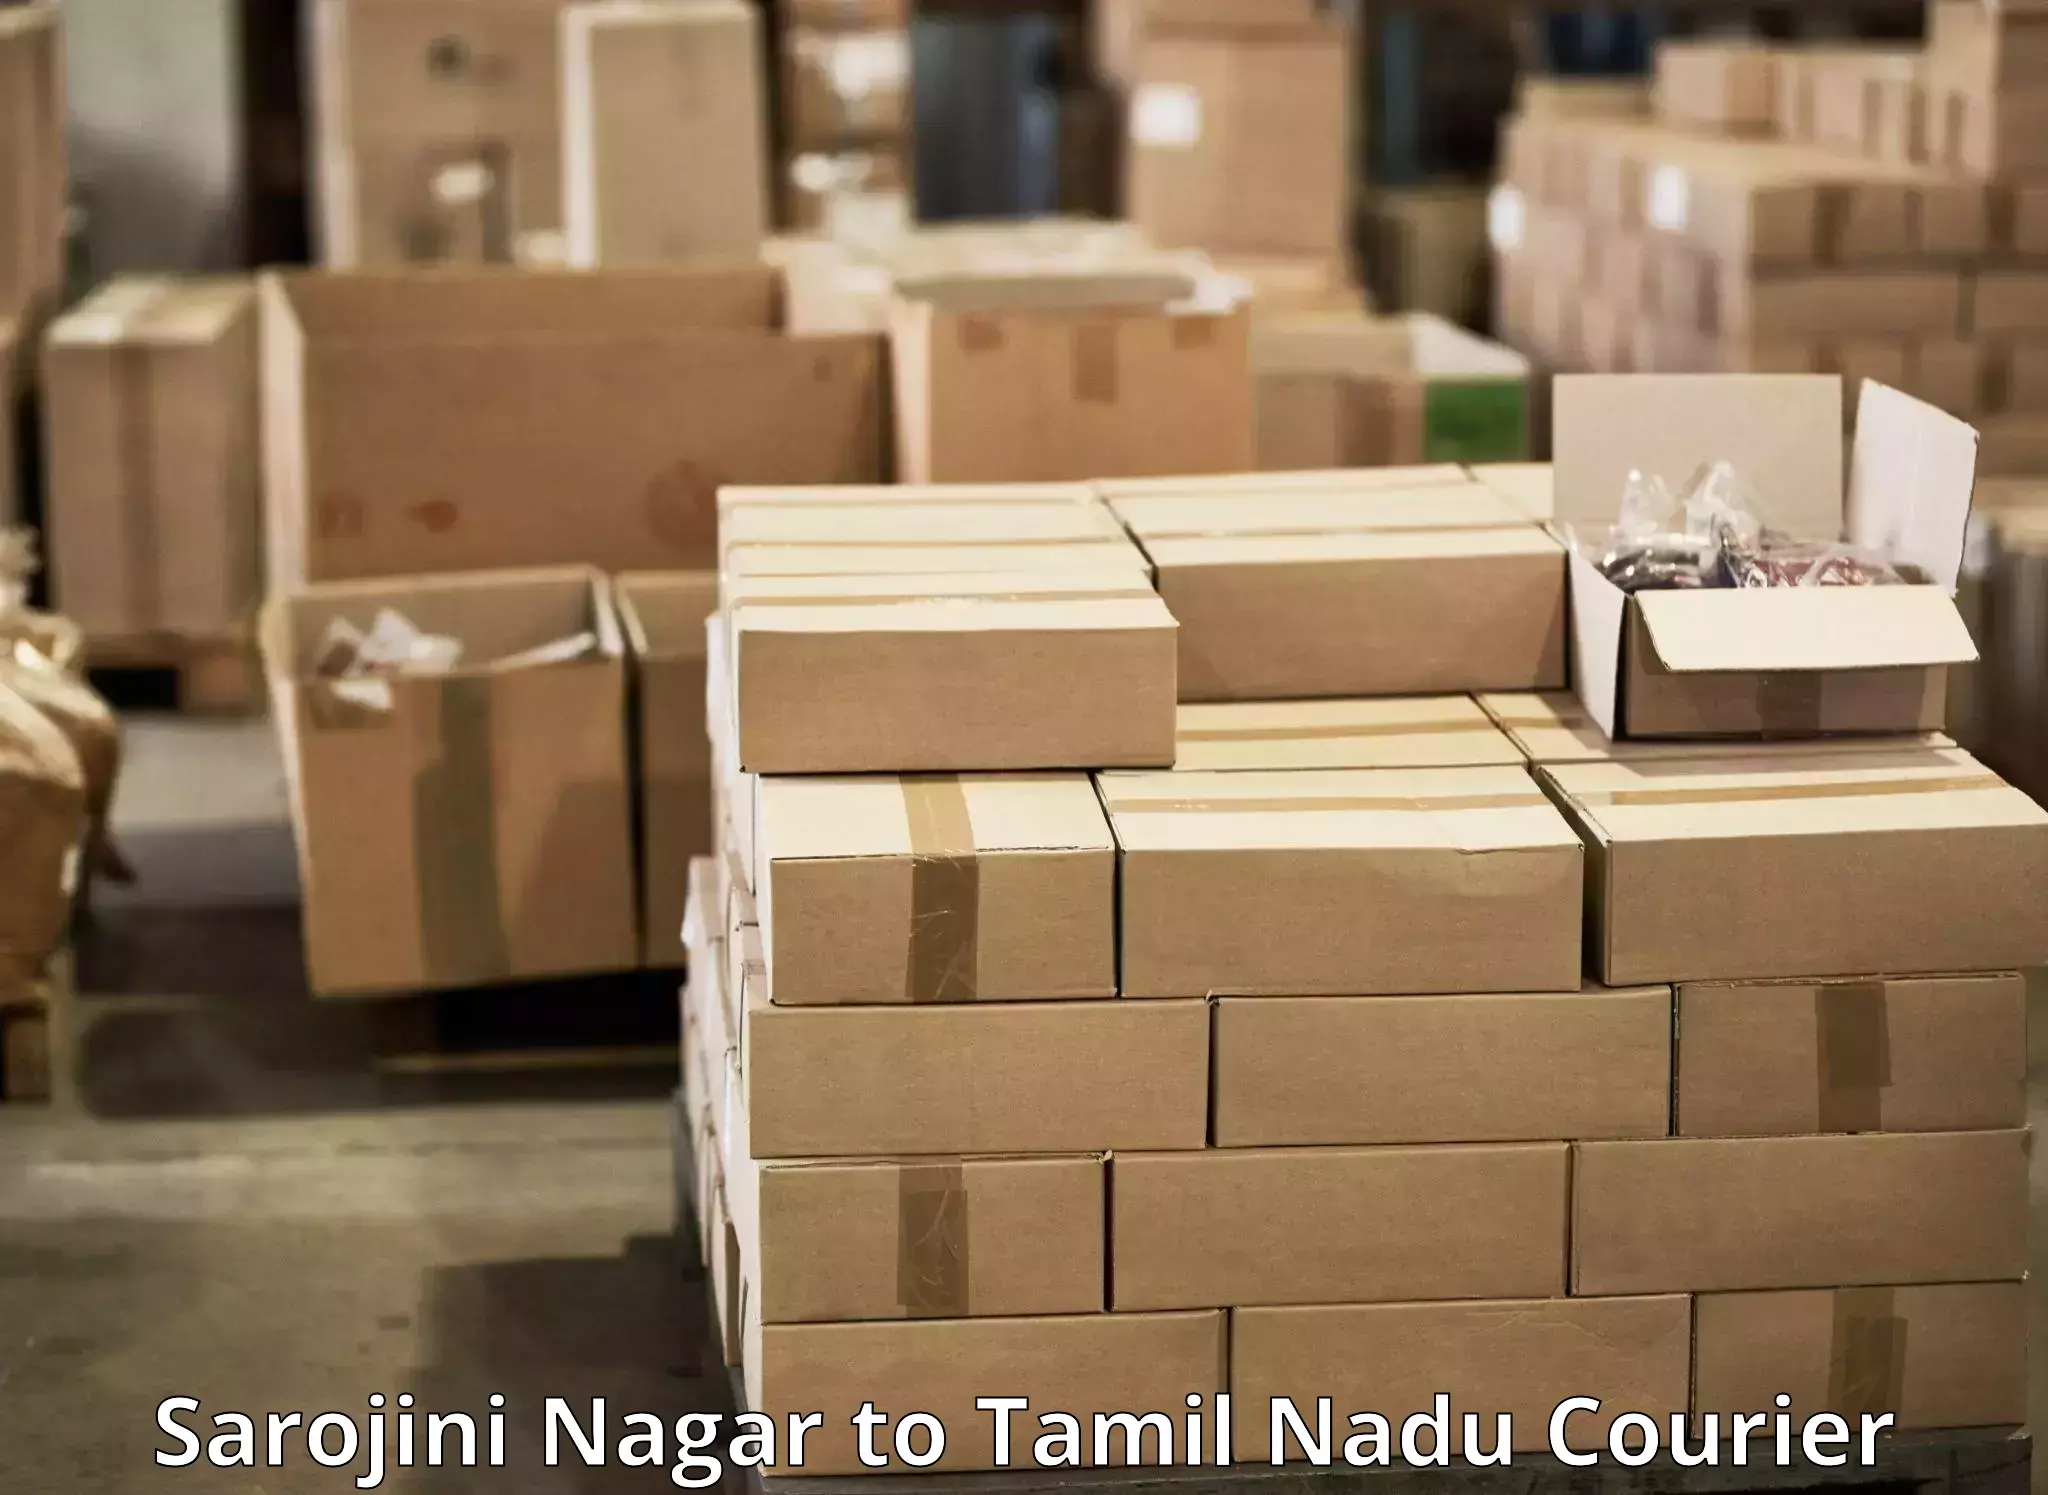 Expedited shipping solutions Sarojini Nagar to Tiruchi